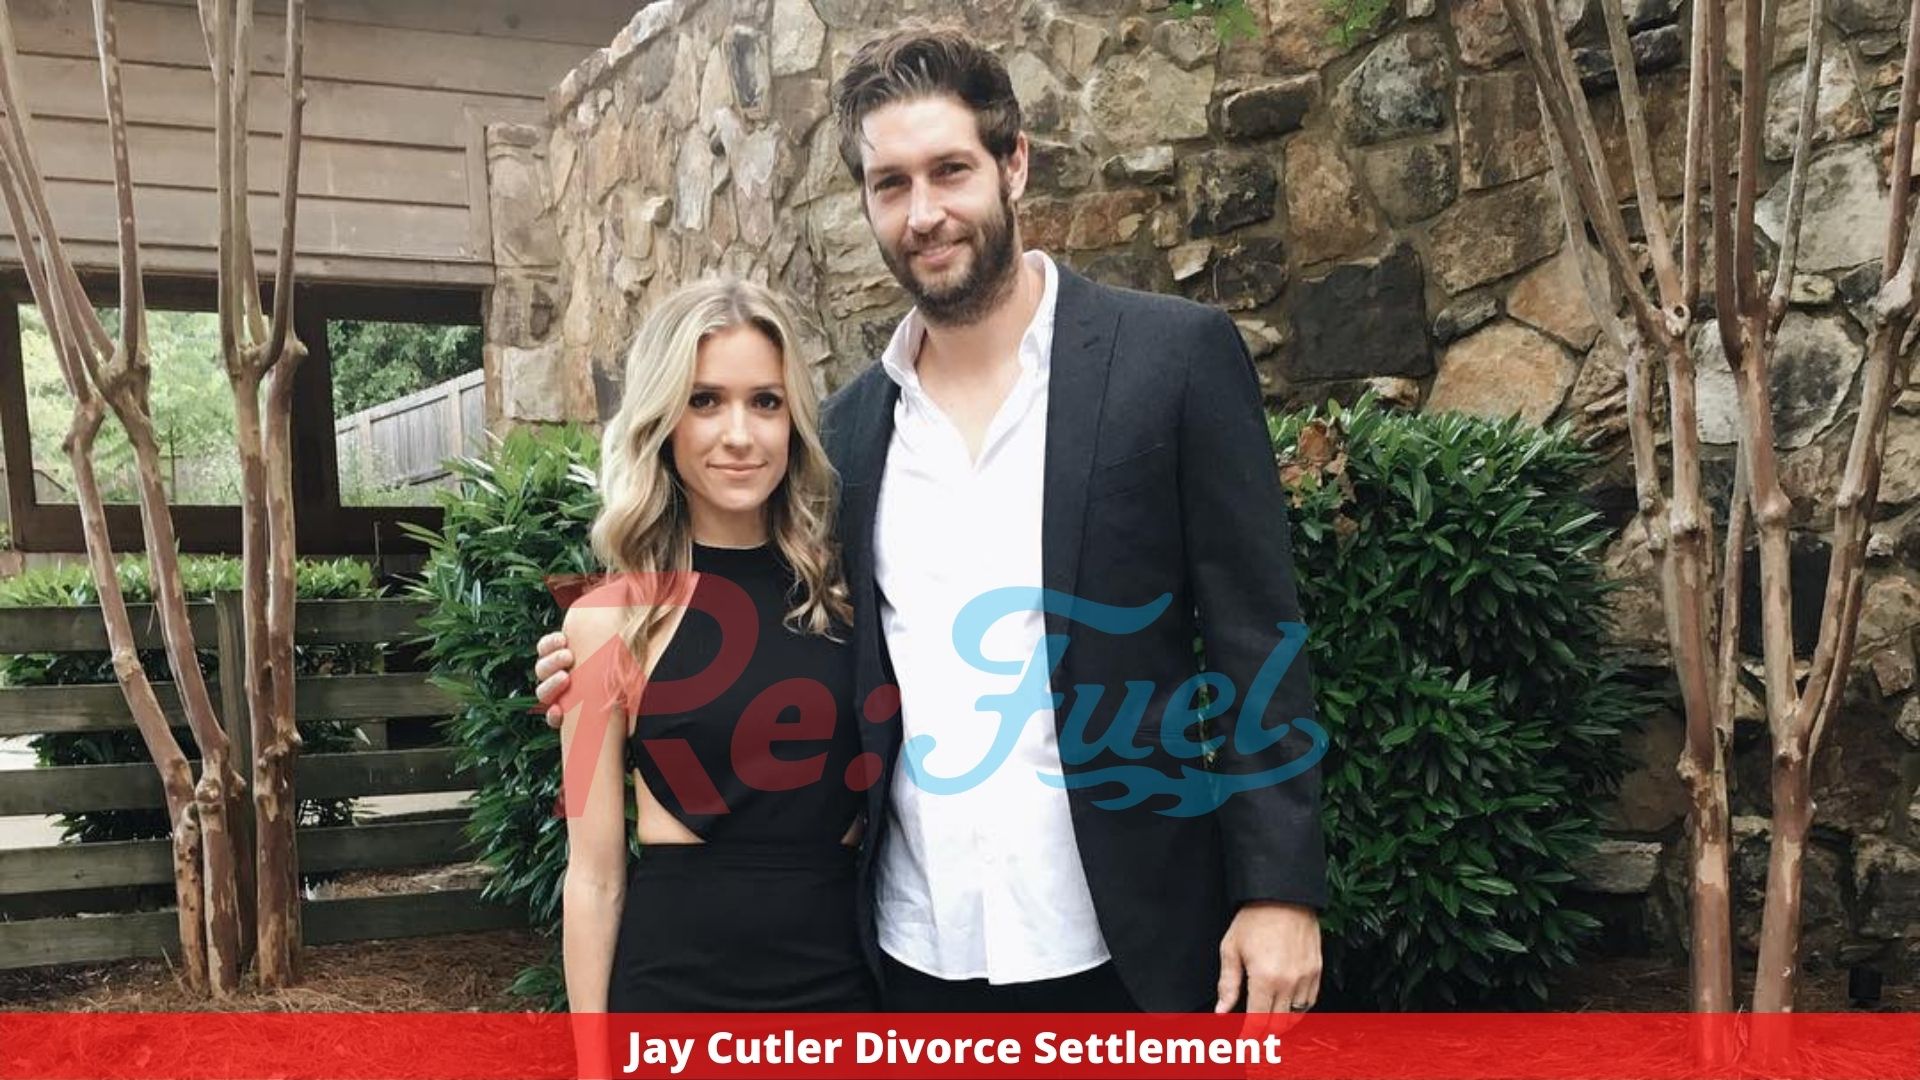 Jay Cutler Divorce Settlement - Complete Details!